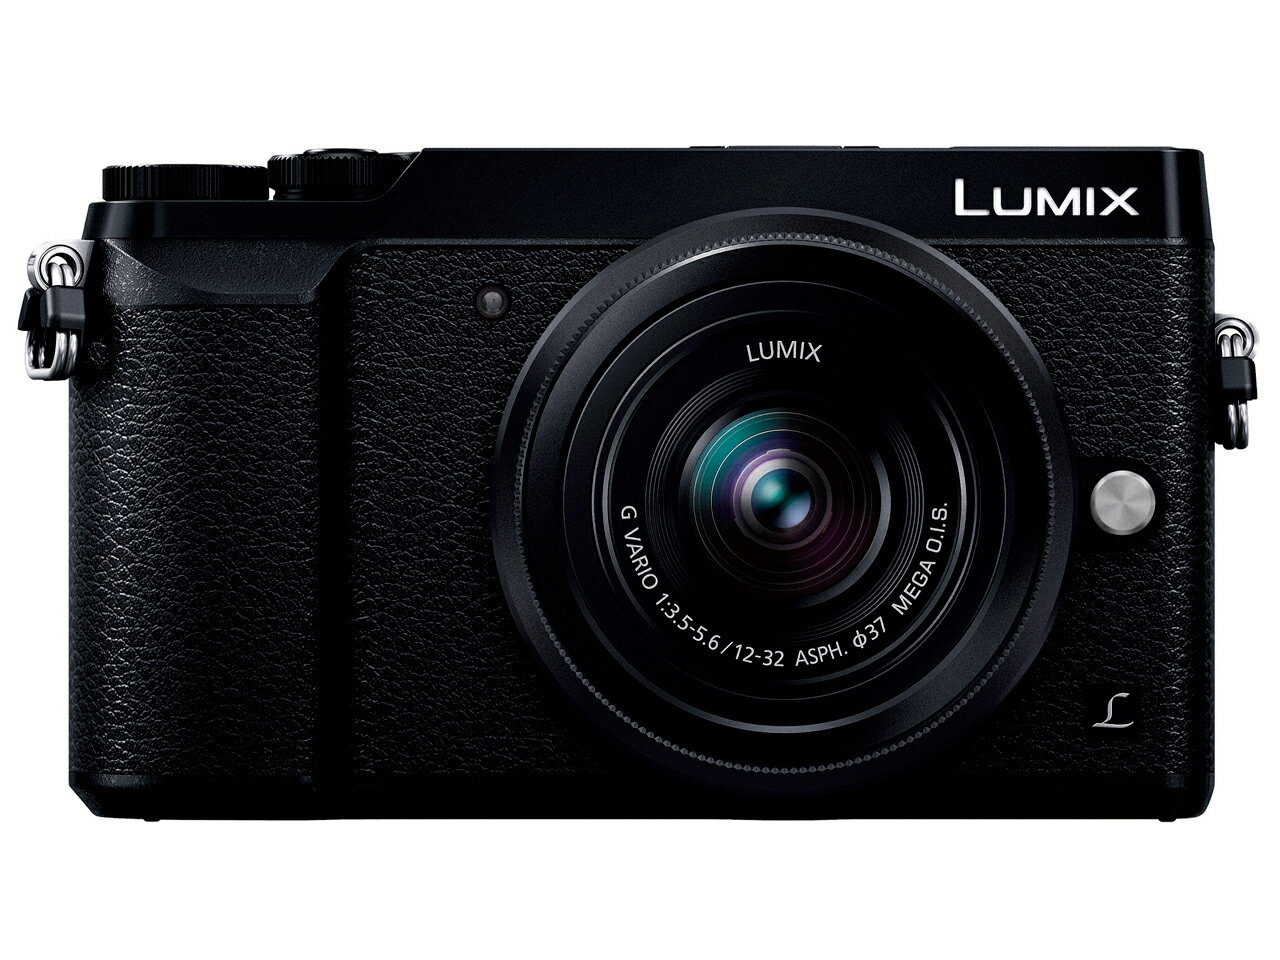 パナソニック(Panasonic) LUMIX DMC-GX7MK2K 標準ズームレンズキット ミラーレス一眼カメラ